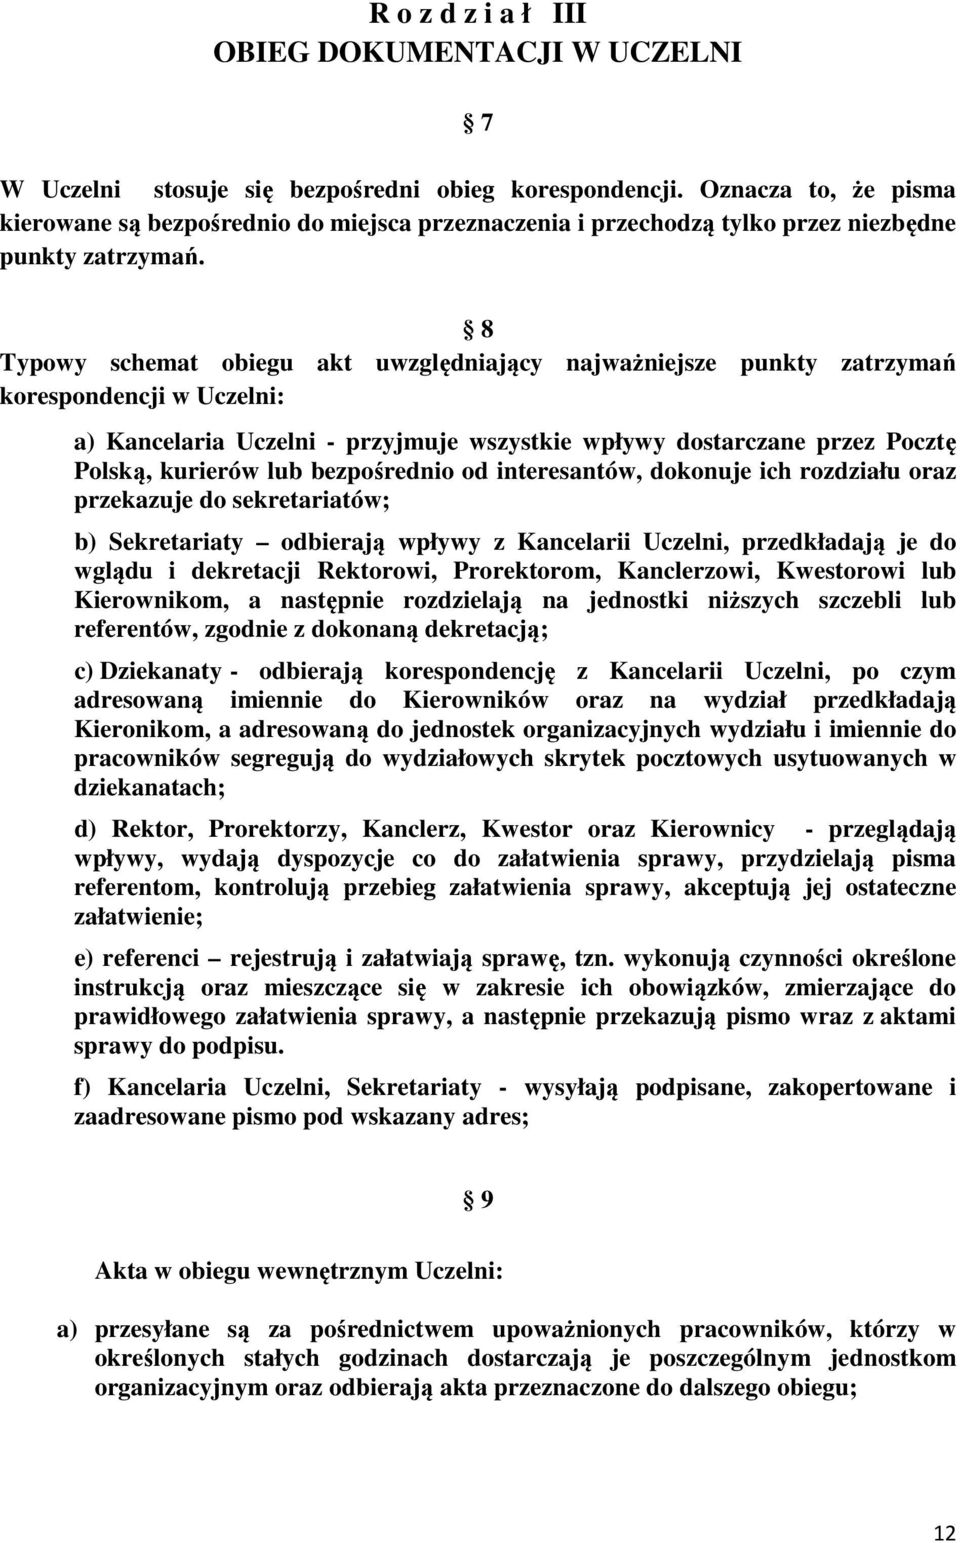 8 Typowy schemat obiegu akt uwzględniający najważniejsze punkty zatrzymań korespondencji w Uczelni: a) Kancelaria Uczelni - przyjmuje wszystkie wpływy dostarczane przez Pocztę Polską, kurierów lub